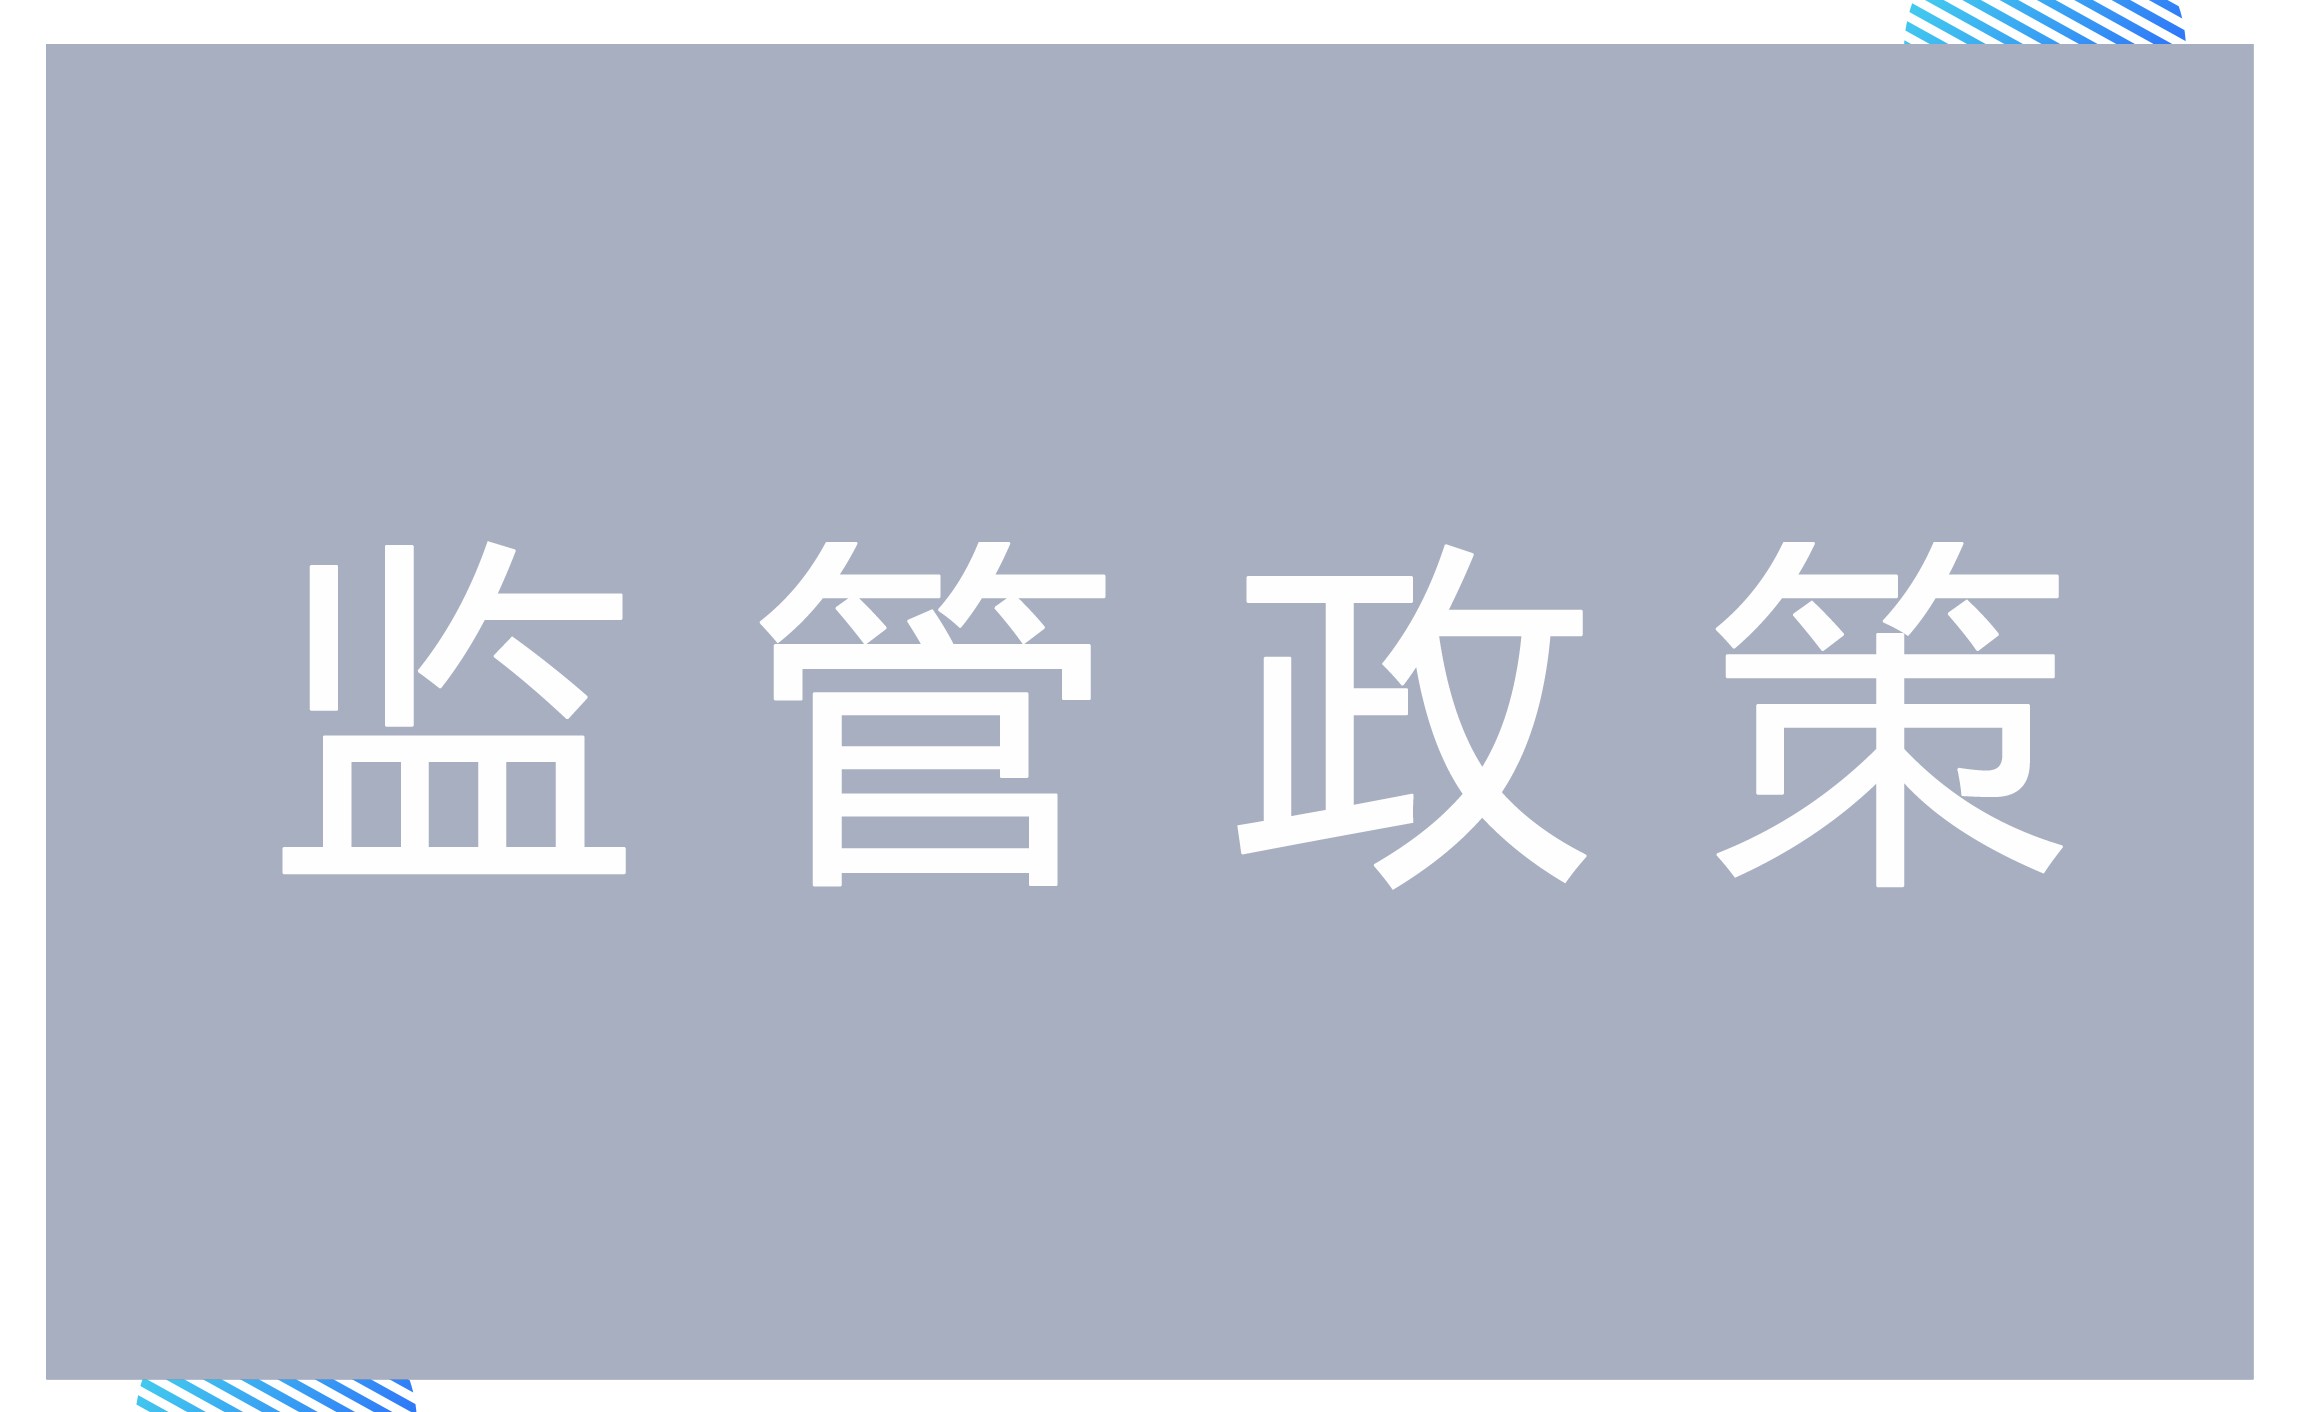 天津市地方税务局关于在滨海新区开展商业保理业营业税差额征税管理办法试点的通知